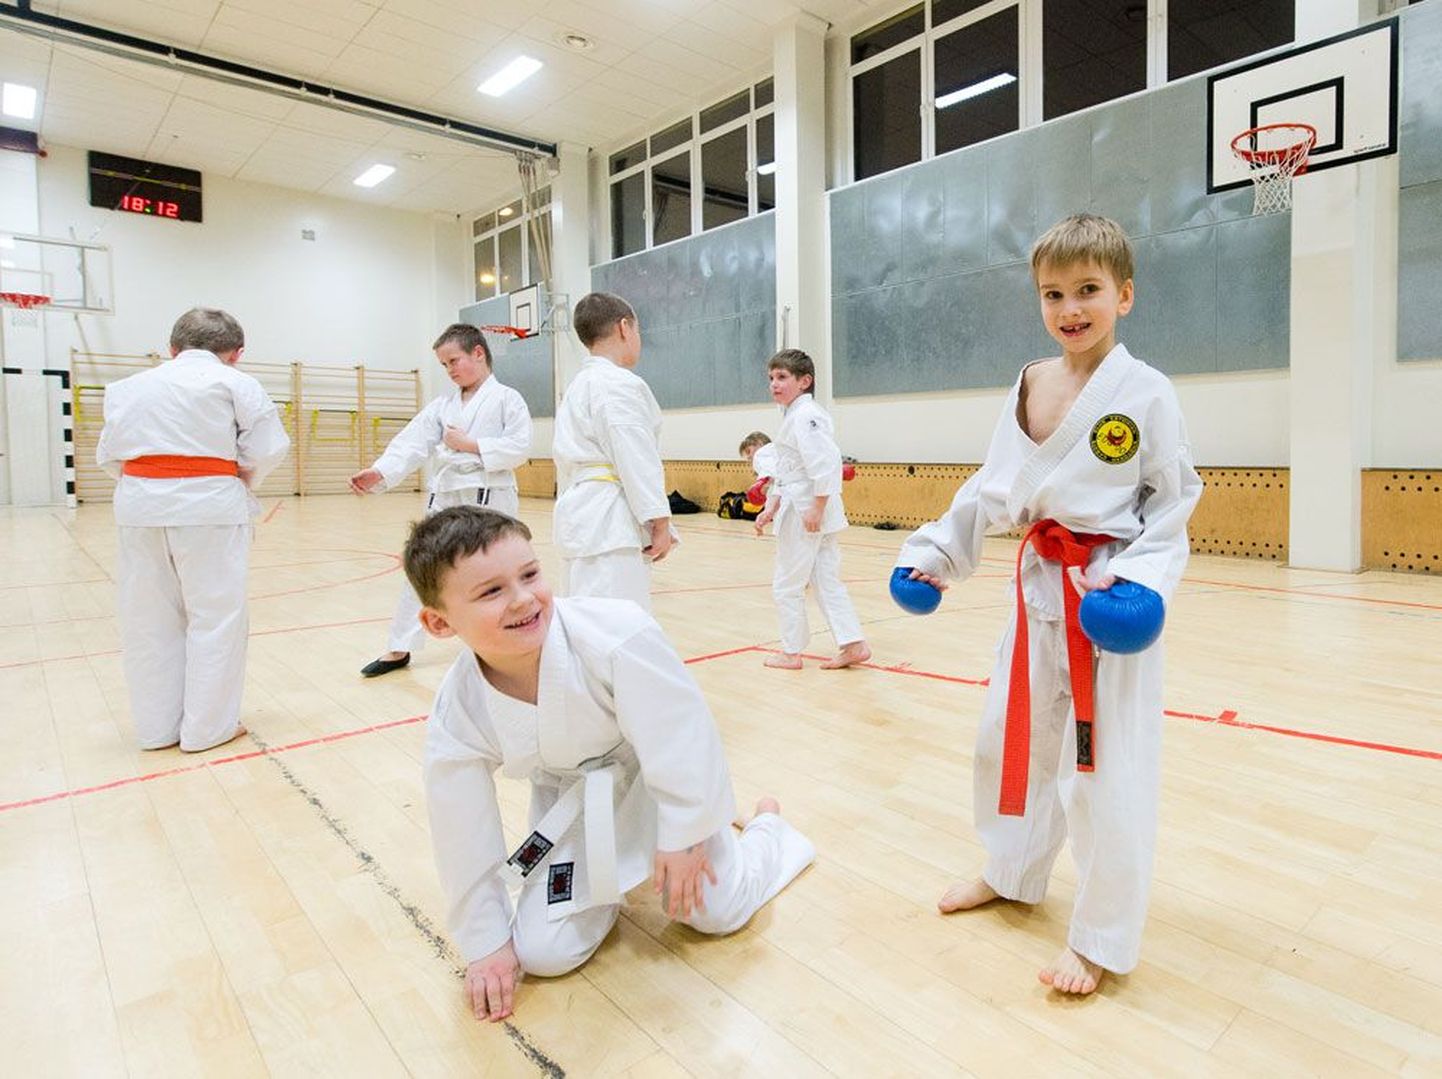 Mustamäe humanitaargümnaasiumis karated harjutavad poisid ei tea veel midagi sellest, et Tallinna linn kavatseb spordisaali üüri tõsta.